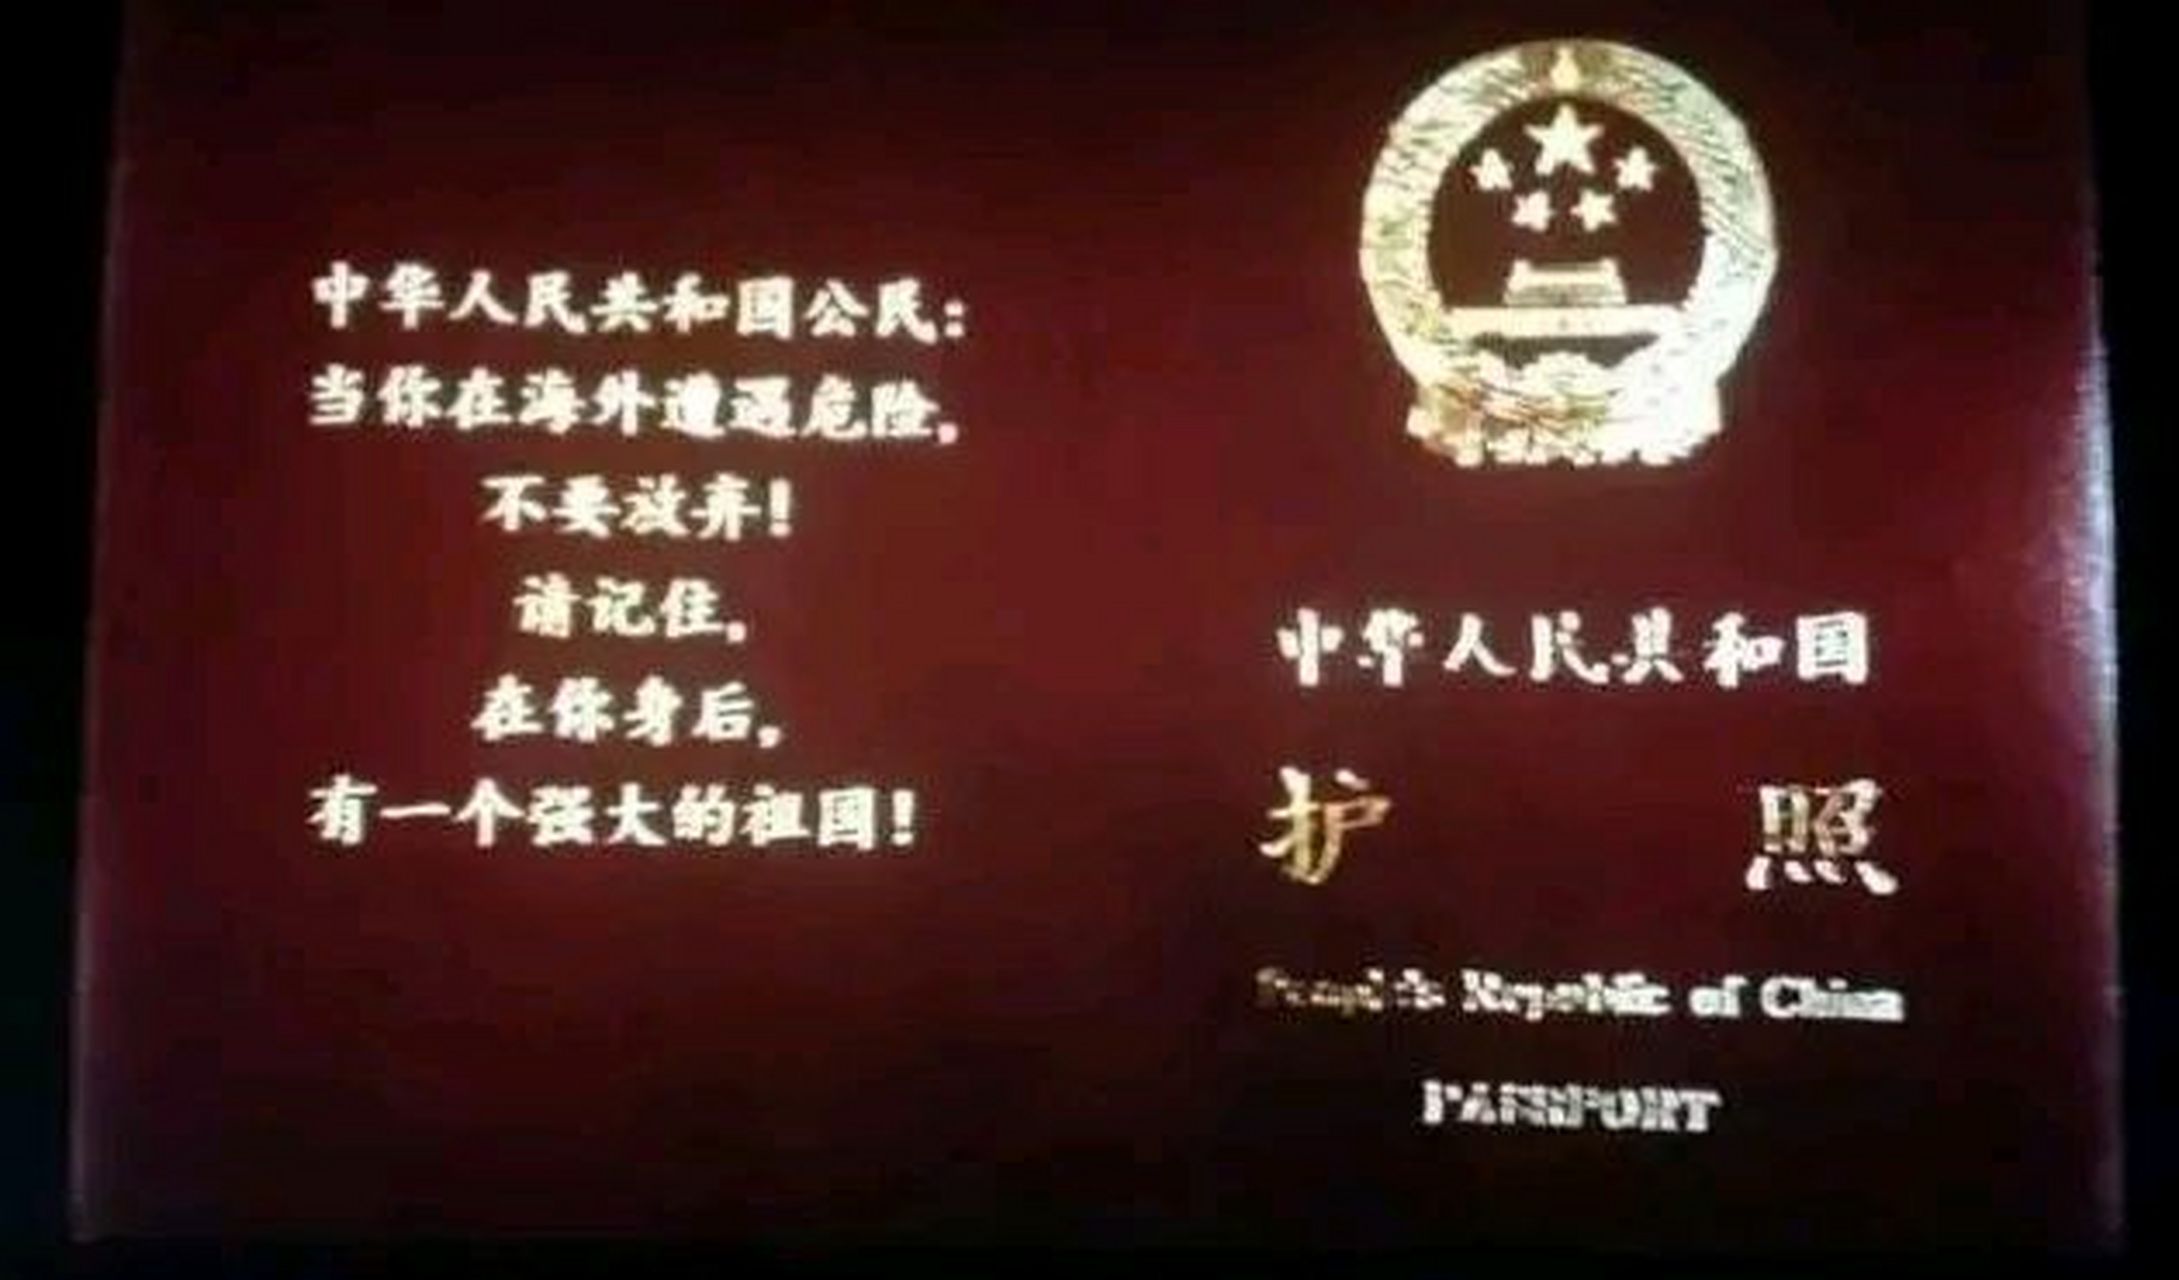 今天有人说,电影战狼2结尾时,护照上写着:中华人民共和国公民:当你